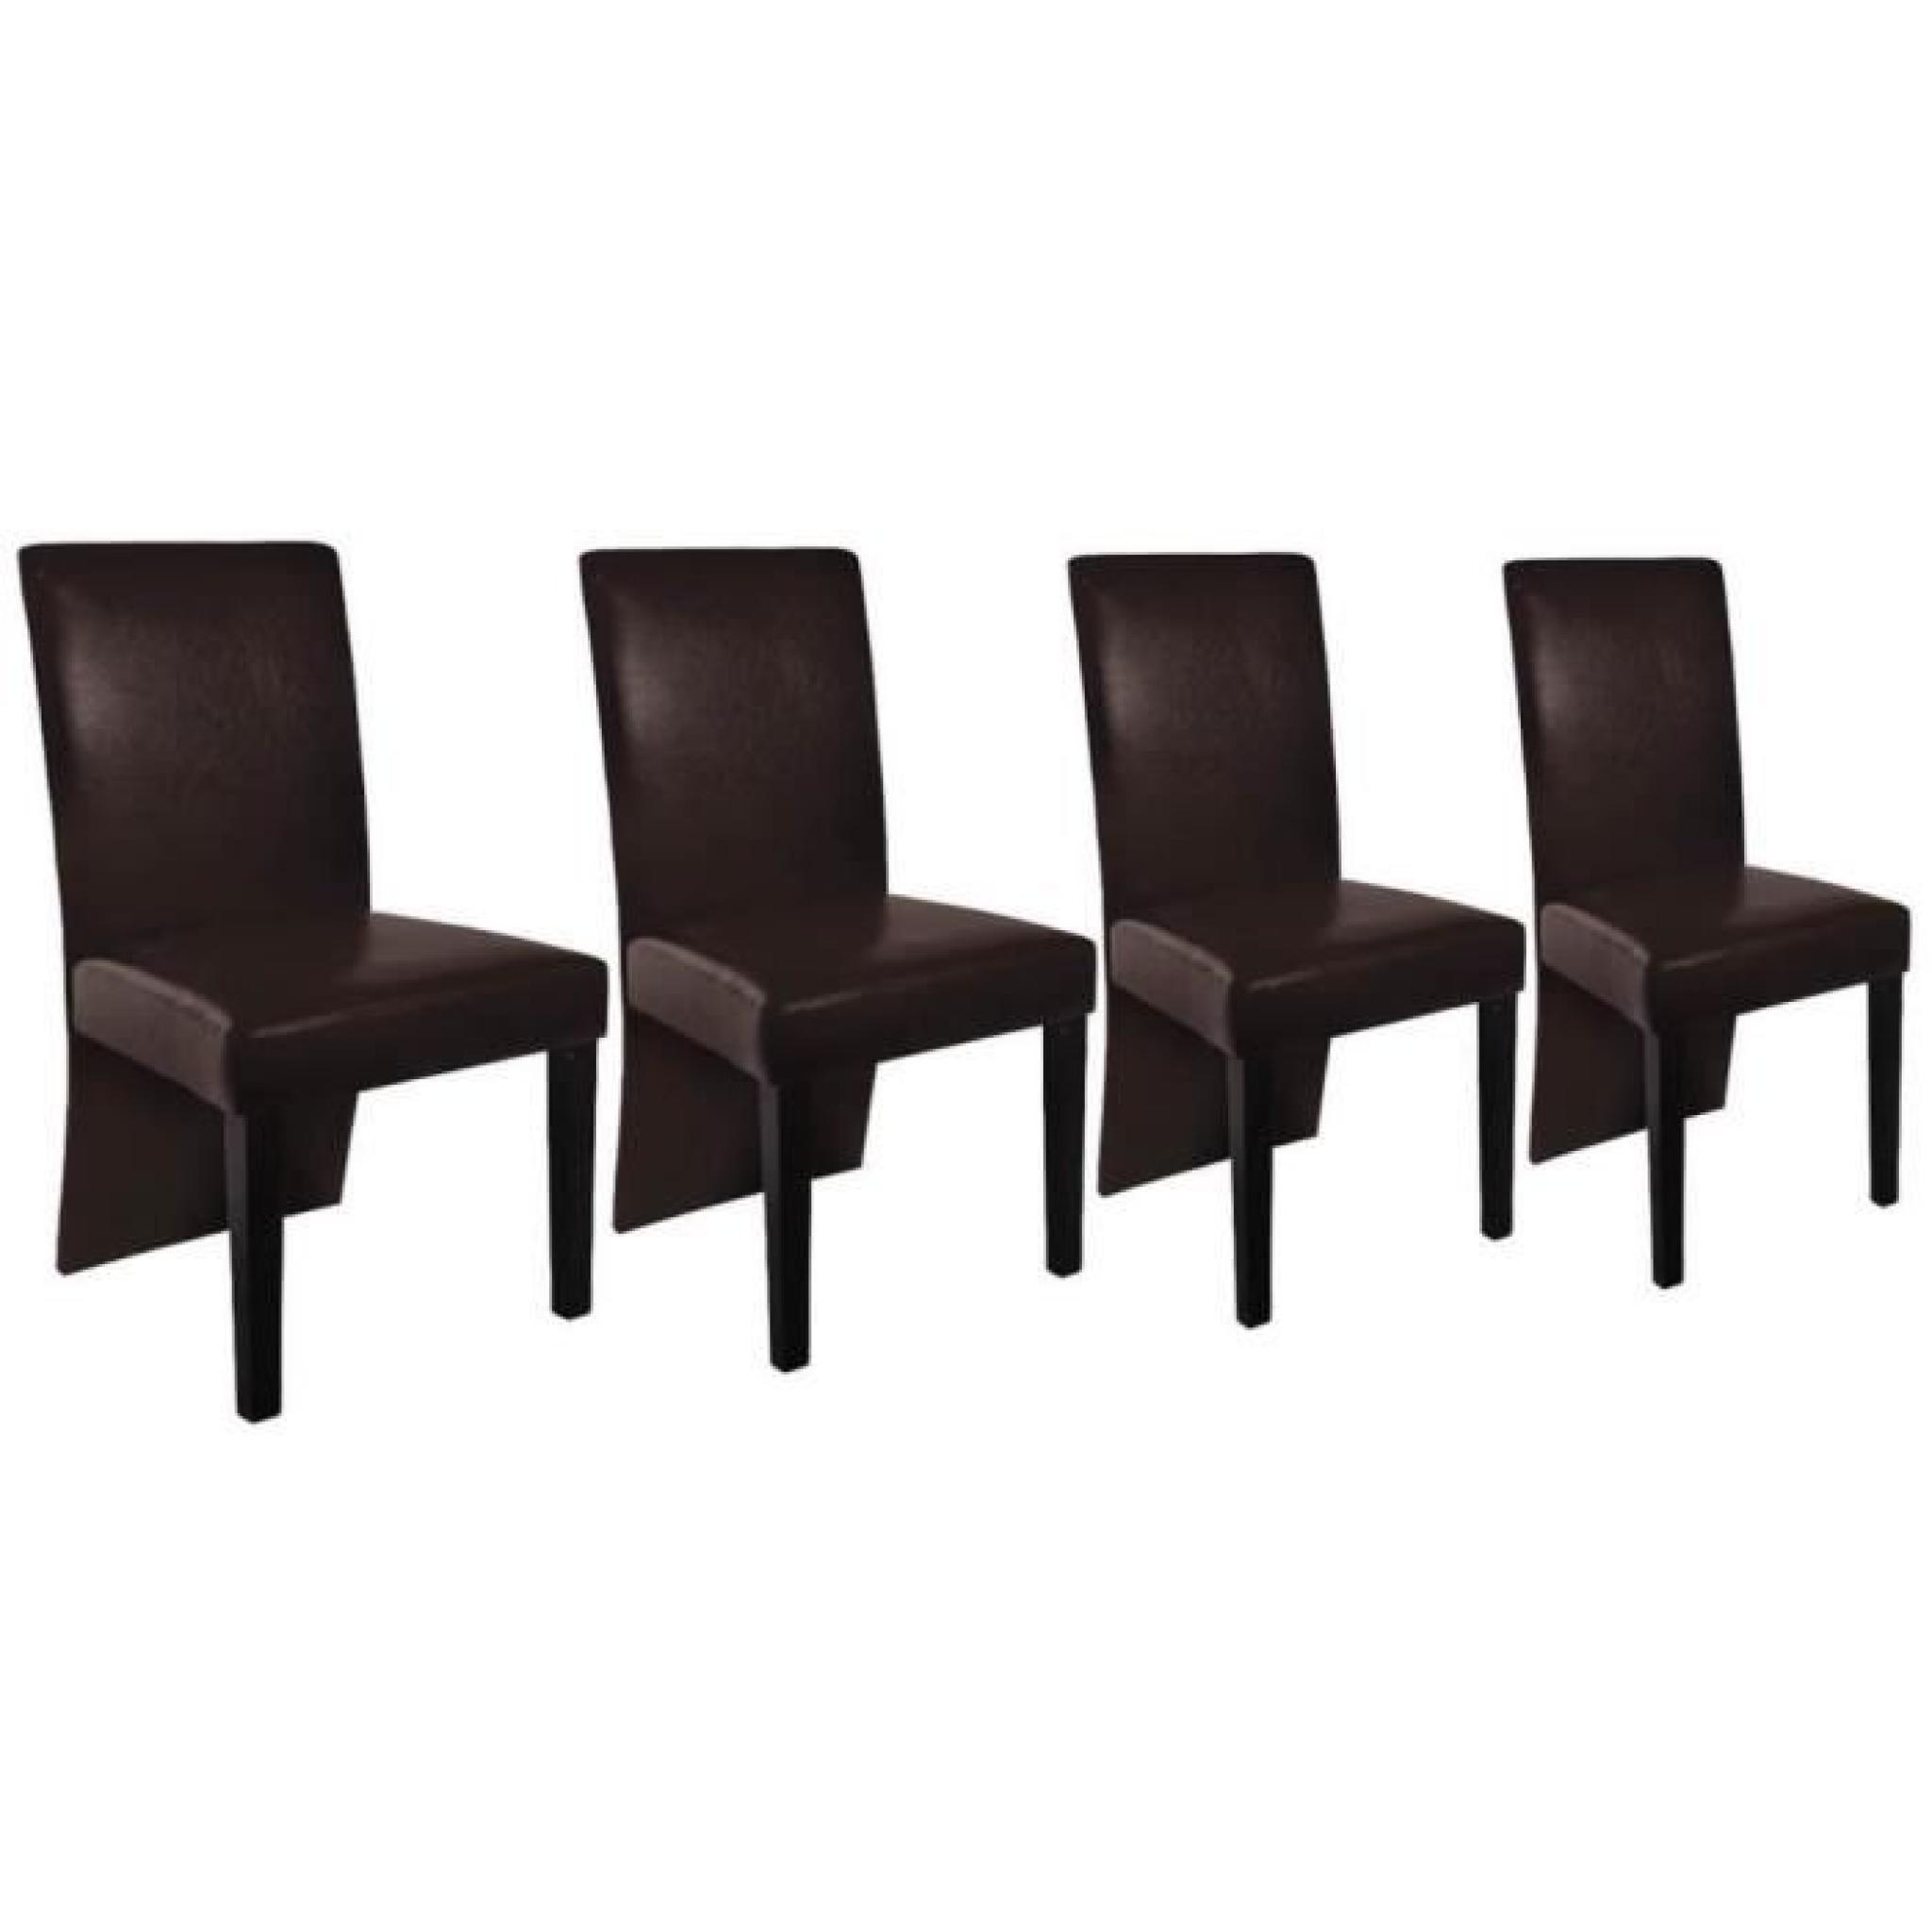 Chaise design bois marron (lot de 4) pas cher